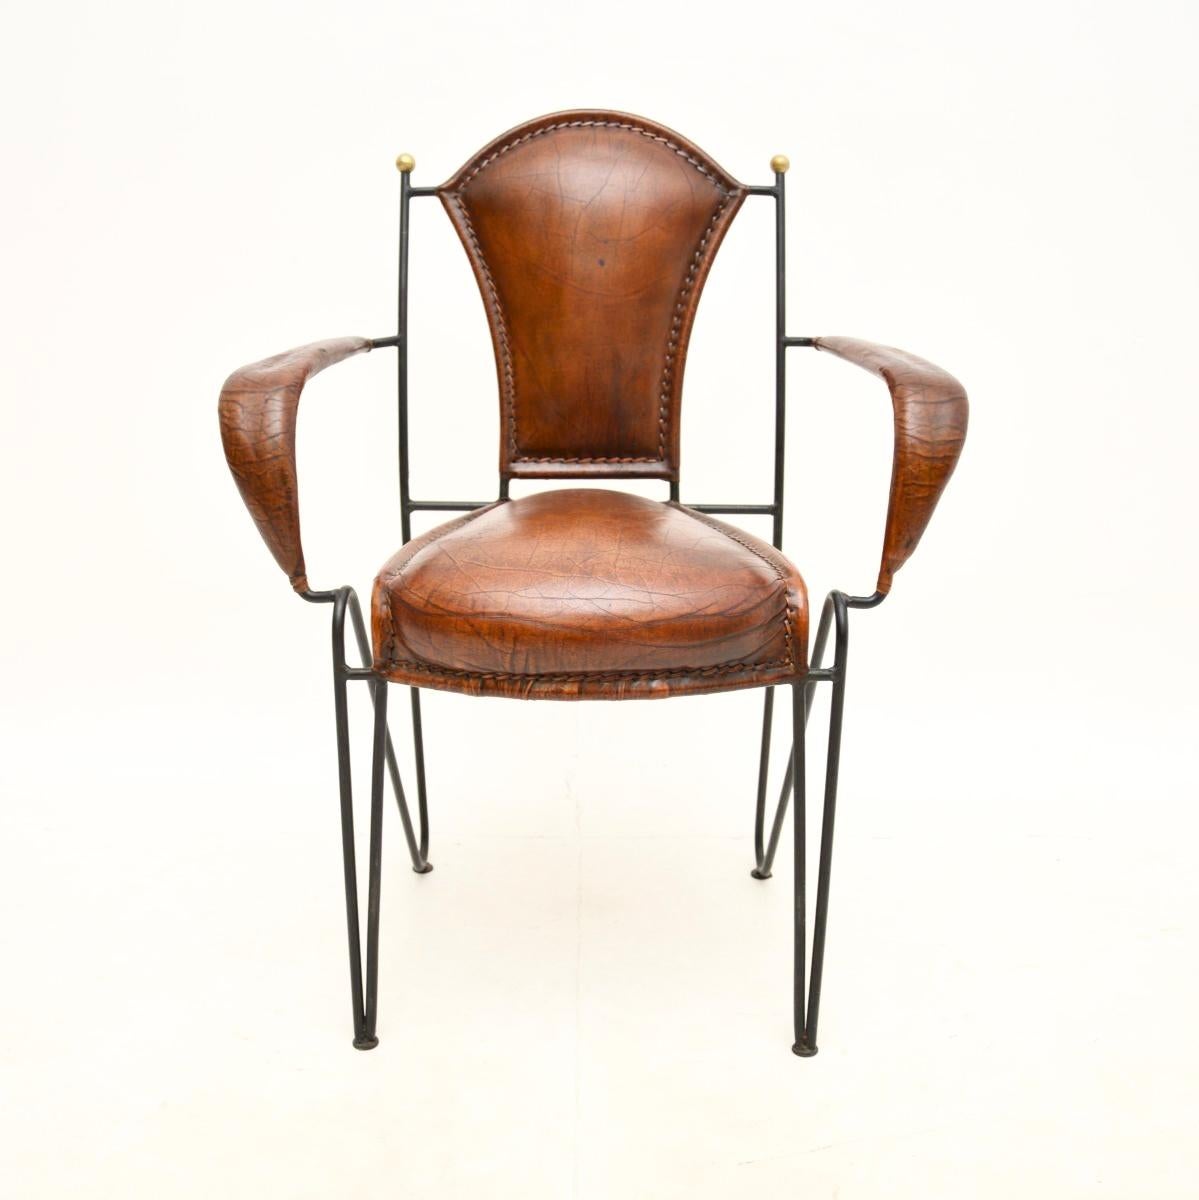 Un superbe fauteuil français vintage en fer et en cuir, datant des années 1960. Elle est de taille idéale pour être utilisée comme chaise de bureau ou comme chaise d'appoint.

Ce modèle est souvent attribué à Jacques Adnet, il est d'une superbe